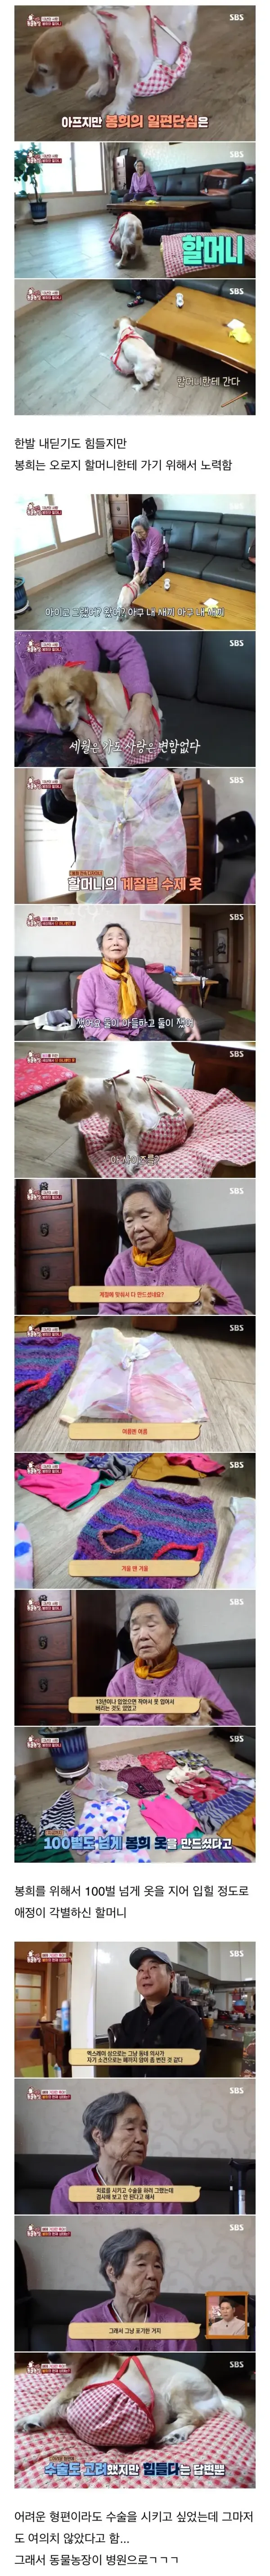 80대 할머님을 울게 만든 동물농장 제작진들